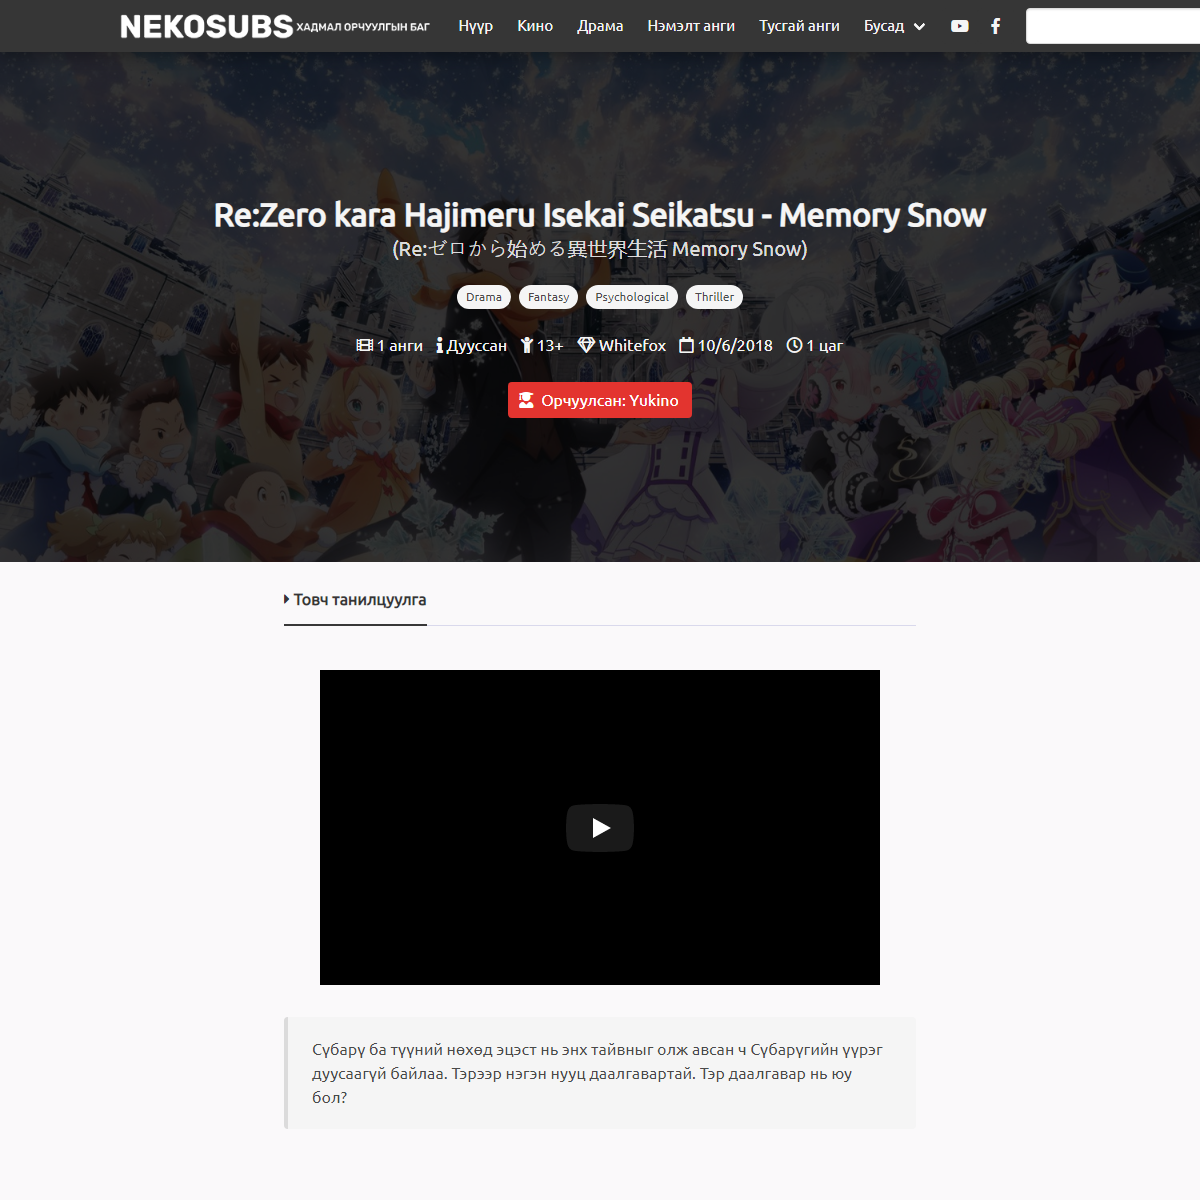 A complete backup of https://nekosubs.net/nekos/rezero-kara-hajimeru-isekai-seikatsu-memory-snow